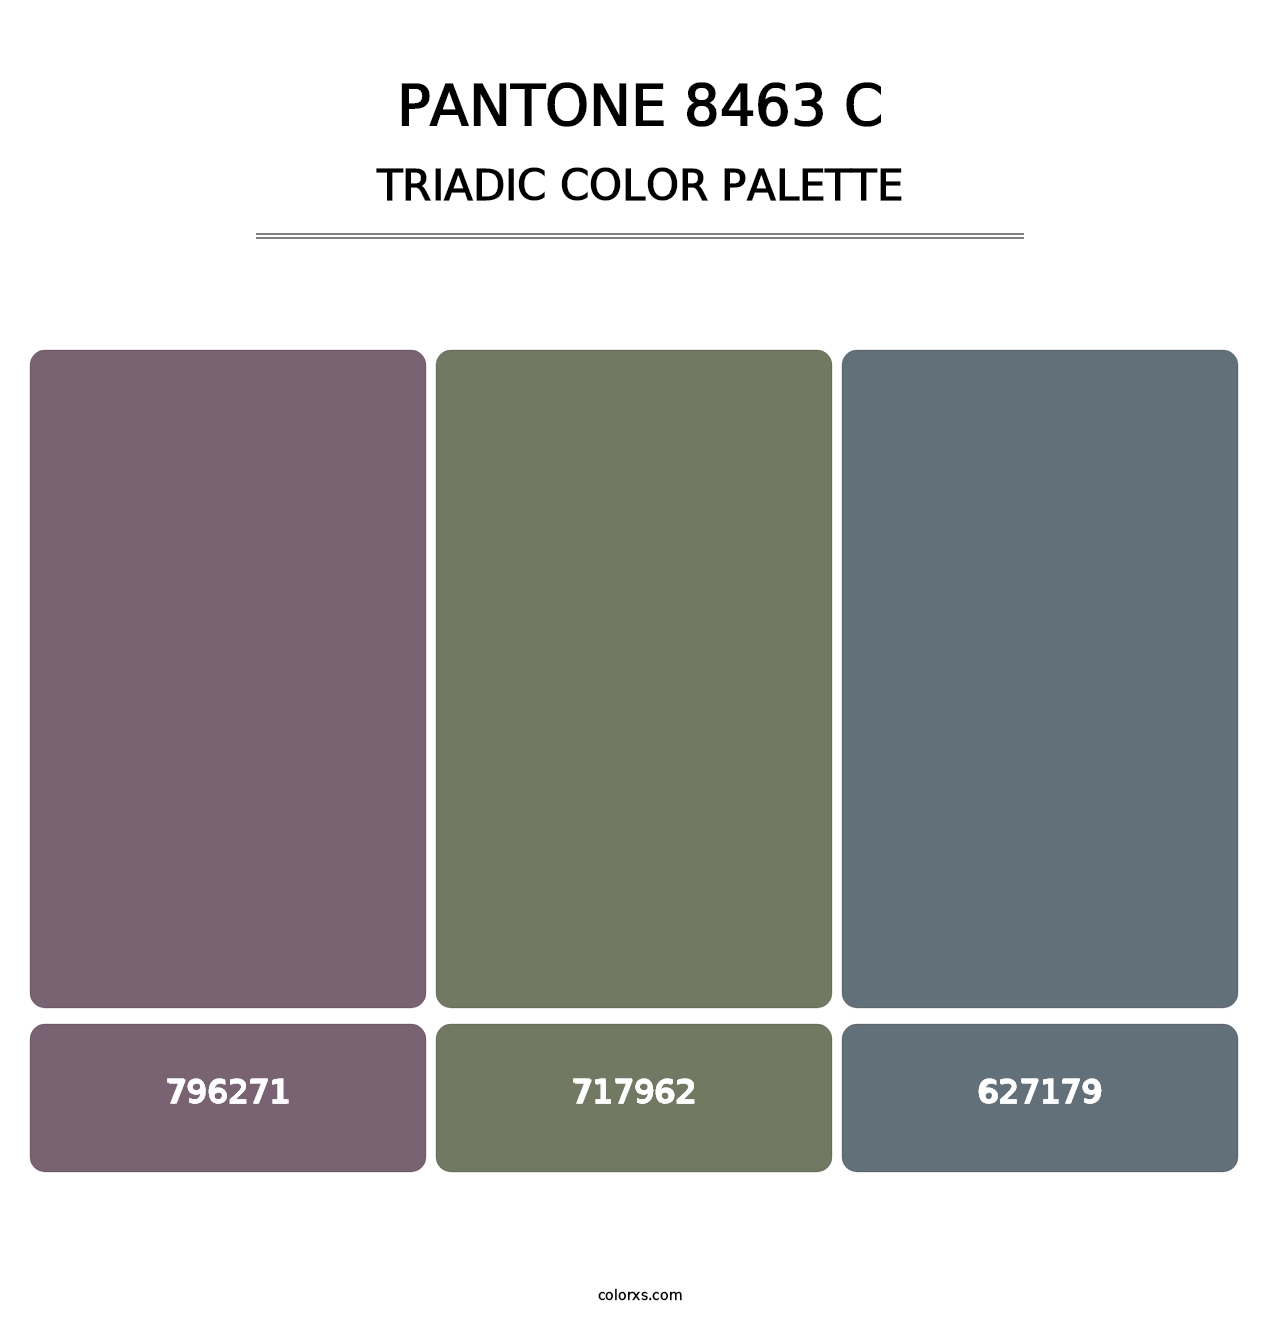 PANTONE 8463 C - Triadic Color Palette